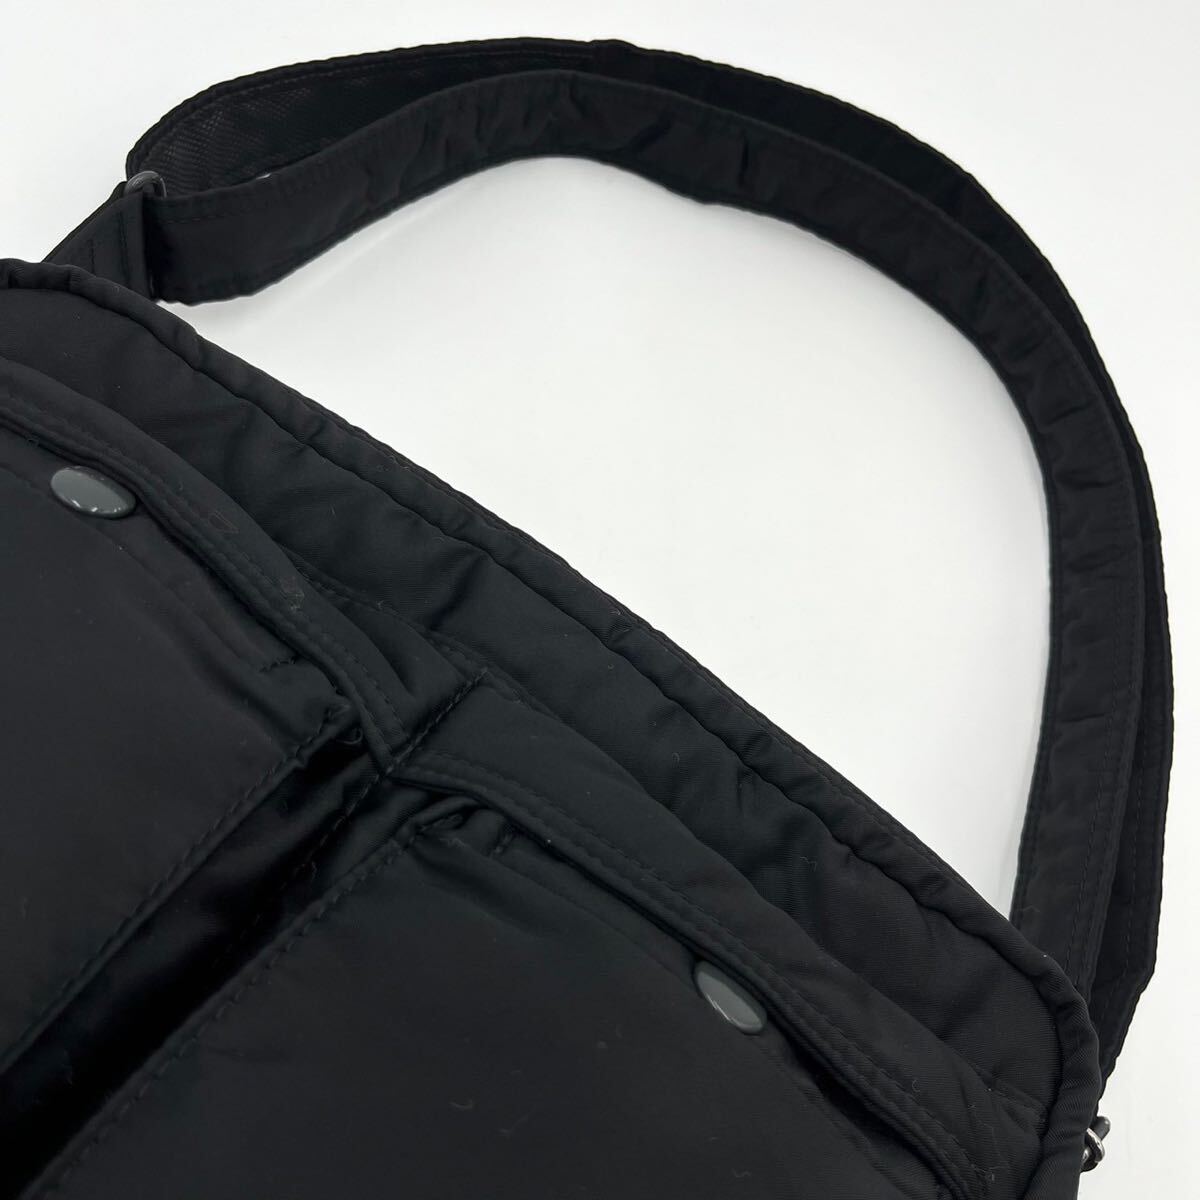 1 иен / превосходный товар * PORTER Porter Yoshida bag язык машина сумка на плечо сумка "body" бизнес 2 слой bai цвет нейлон черный чёрный 